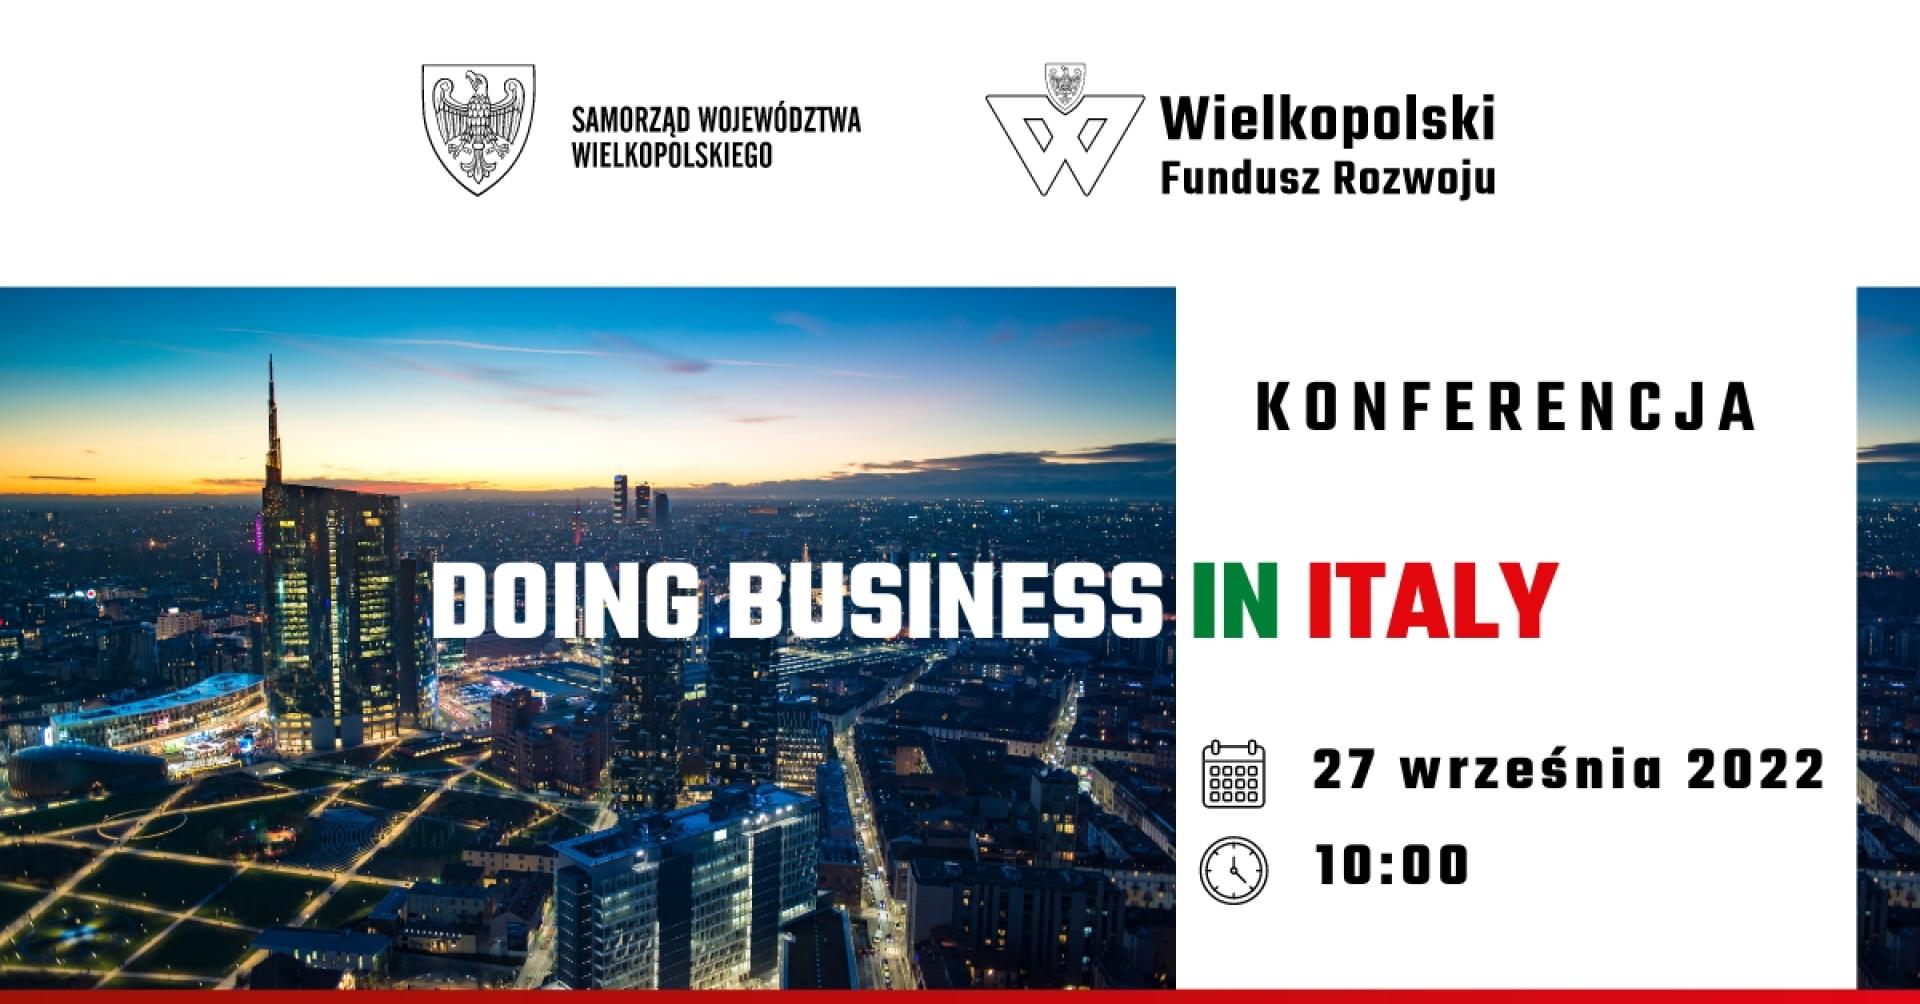 Doing Business in Italy” – konferencja online dla przedsiębiorców - zobacz więcej